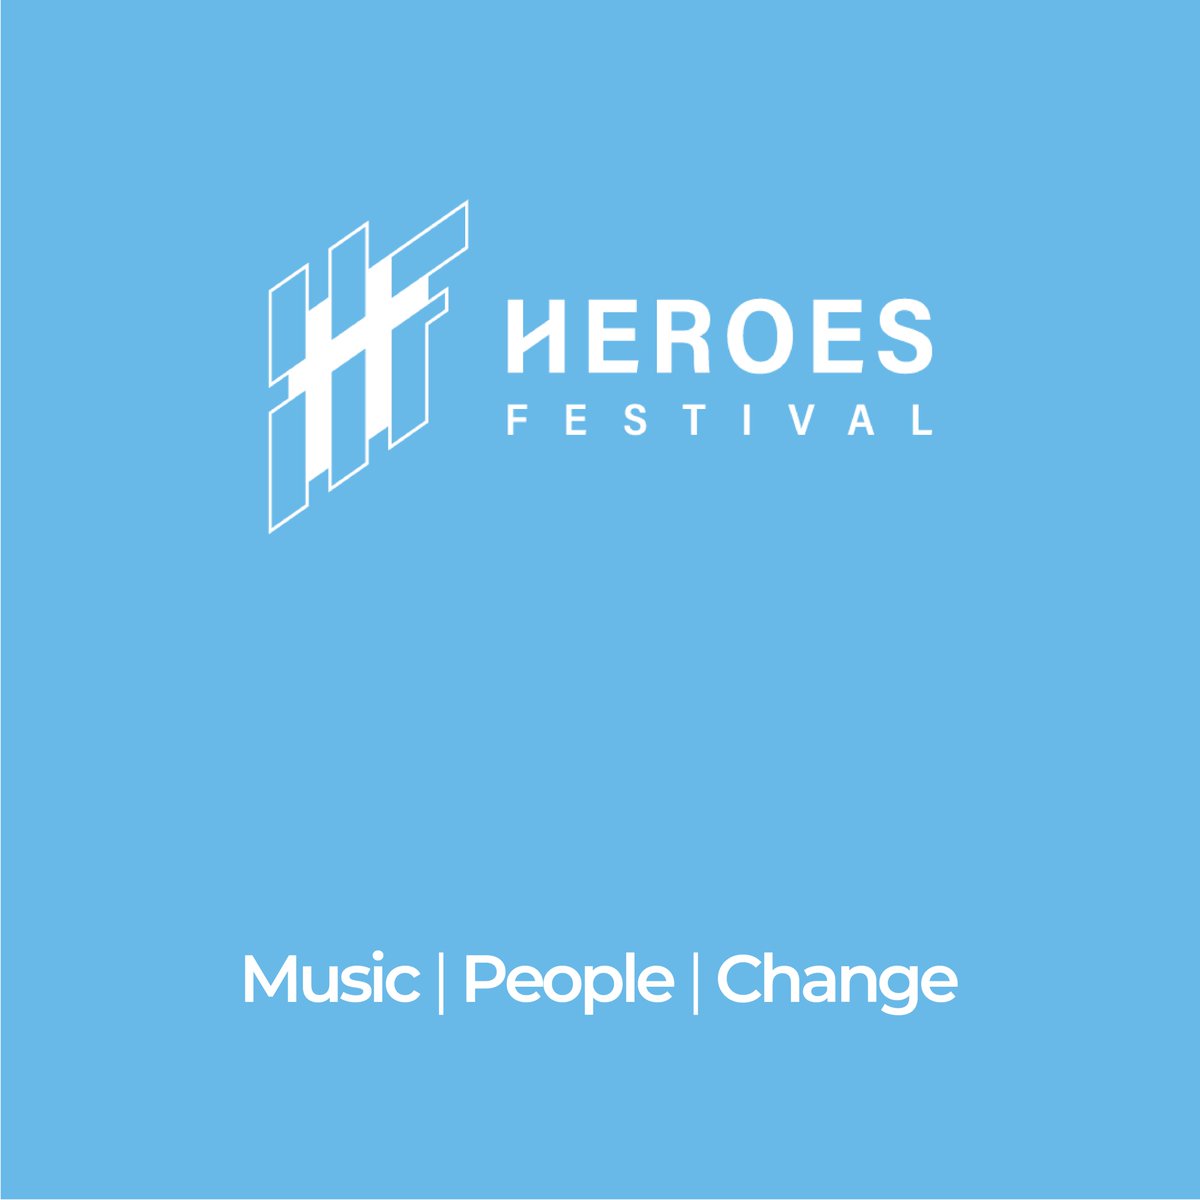 Al via #HeroesFestival, manifestazione prodotta da Music Innovation Hub al fianco dell’Alleanza Italiana per lo Sviluppo Sostenibile (ASviS) e in collaborazione con UN SDG Action Campaign L’edizione 2024, la quarta, parte da Ivrea il 7 maggio e si conclude a Roma il 24 maggio